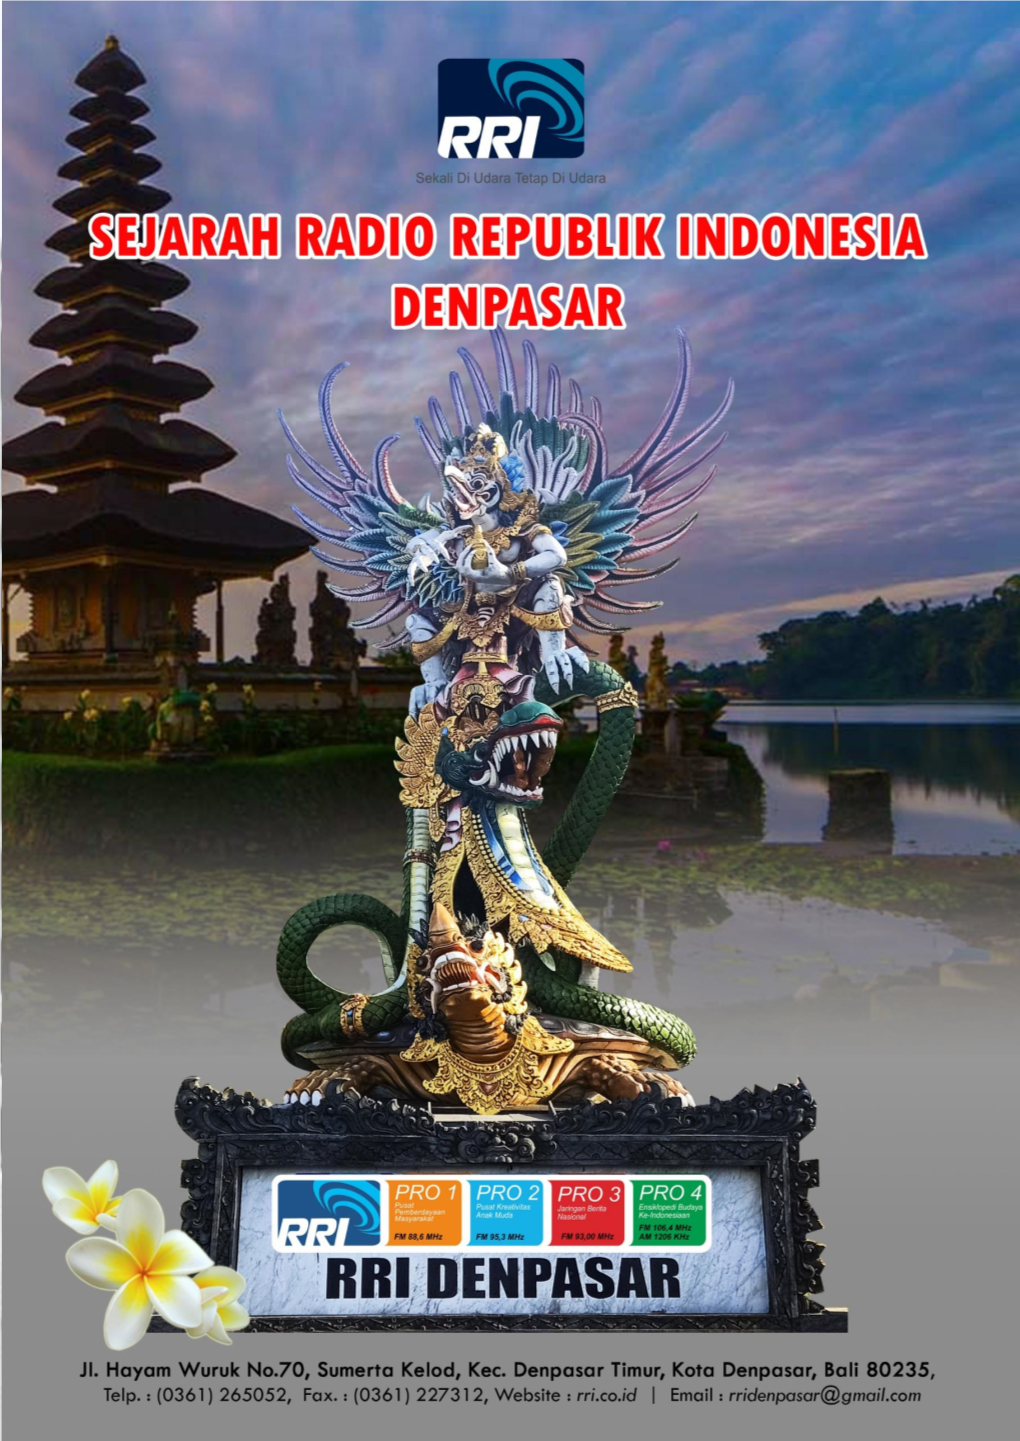 Sejarah Radio Republik Indonesia Denpasar